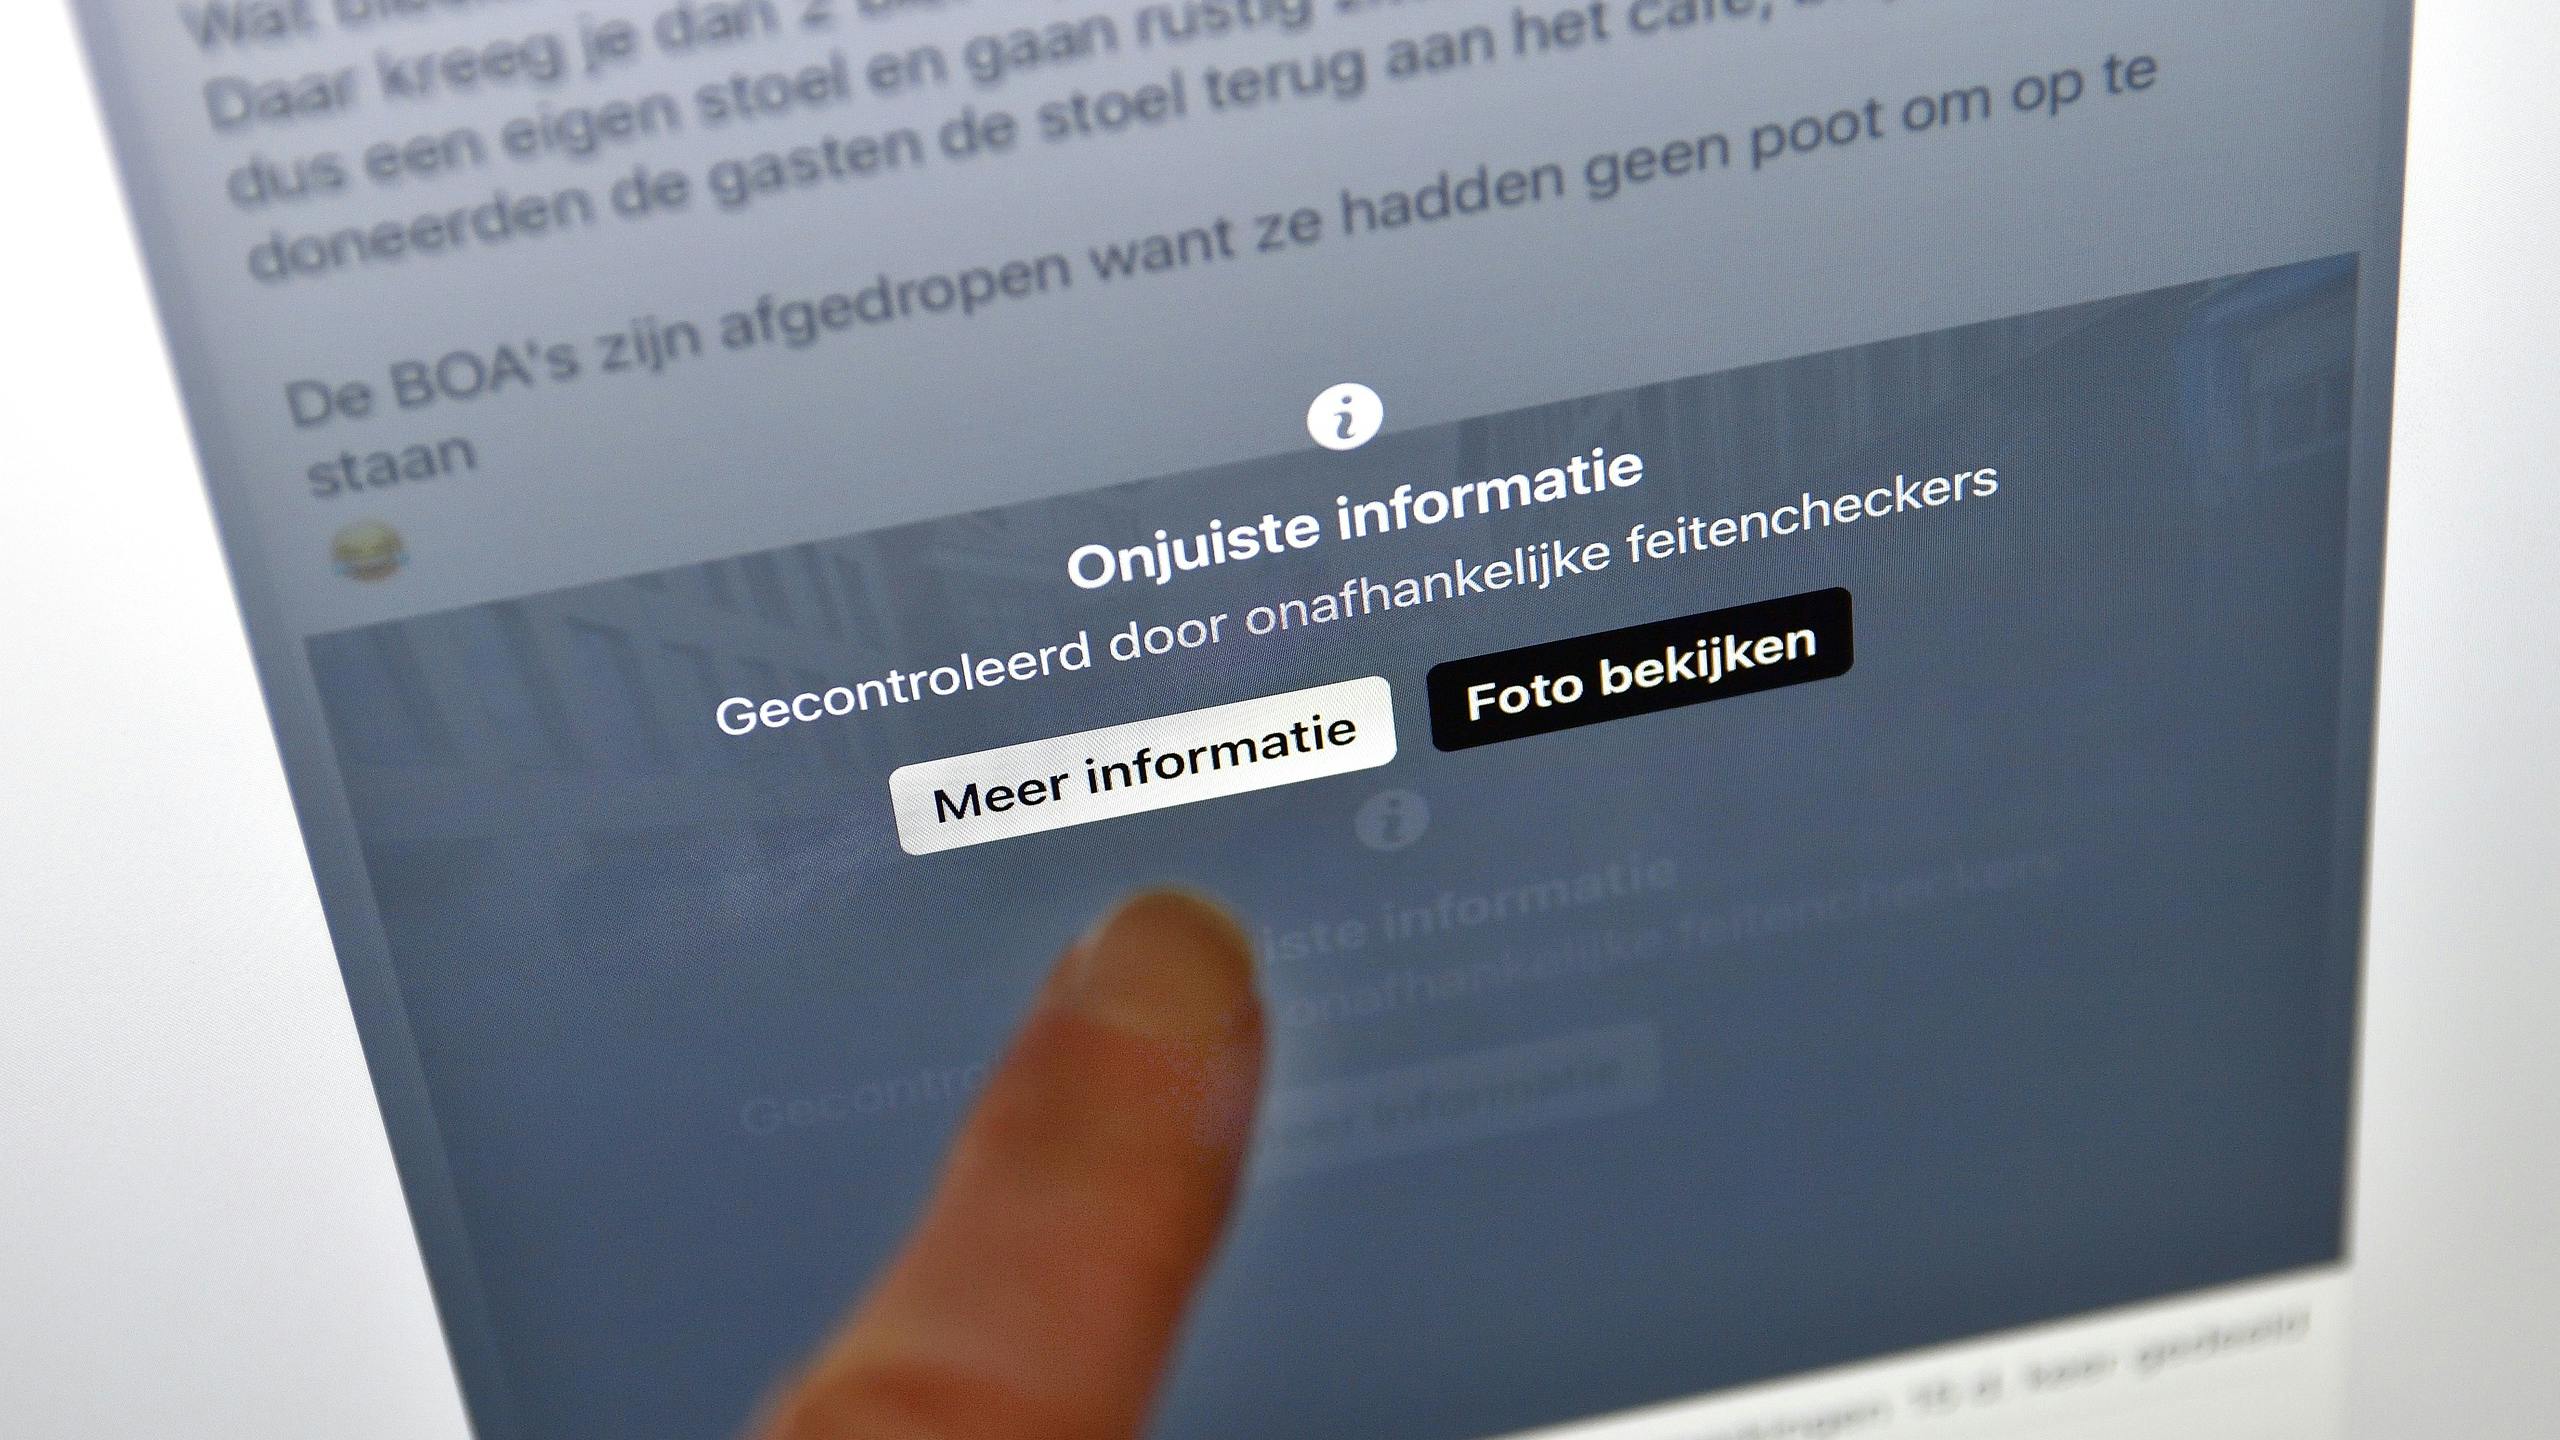 Nepnieuws verschuift van openbare sociale media naar privékanalen, Nederlander maakt zich amper zorgen